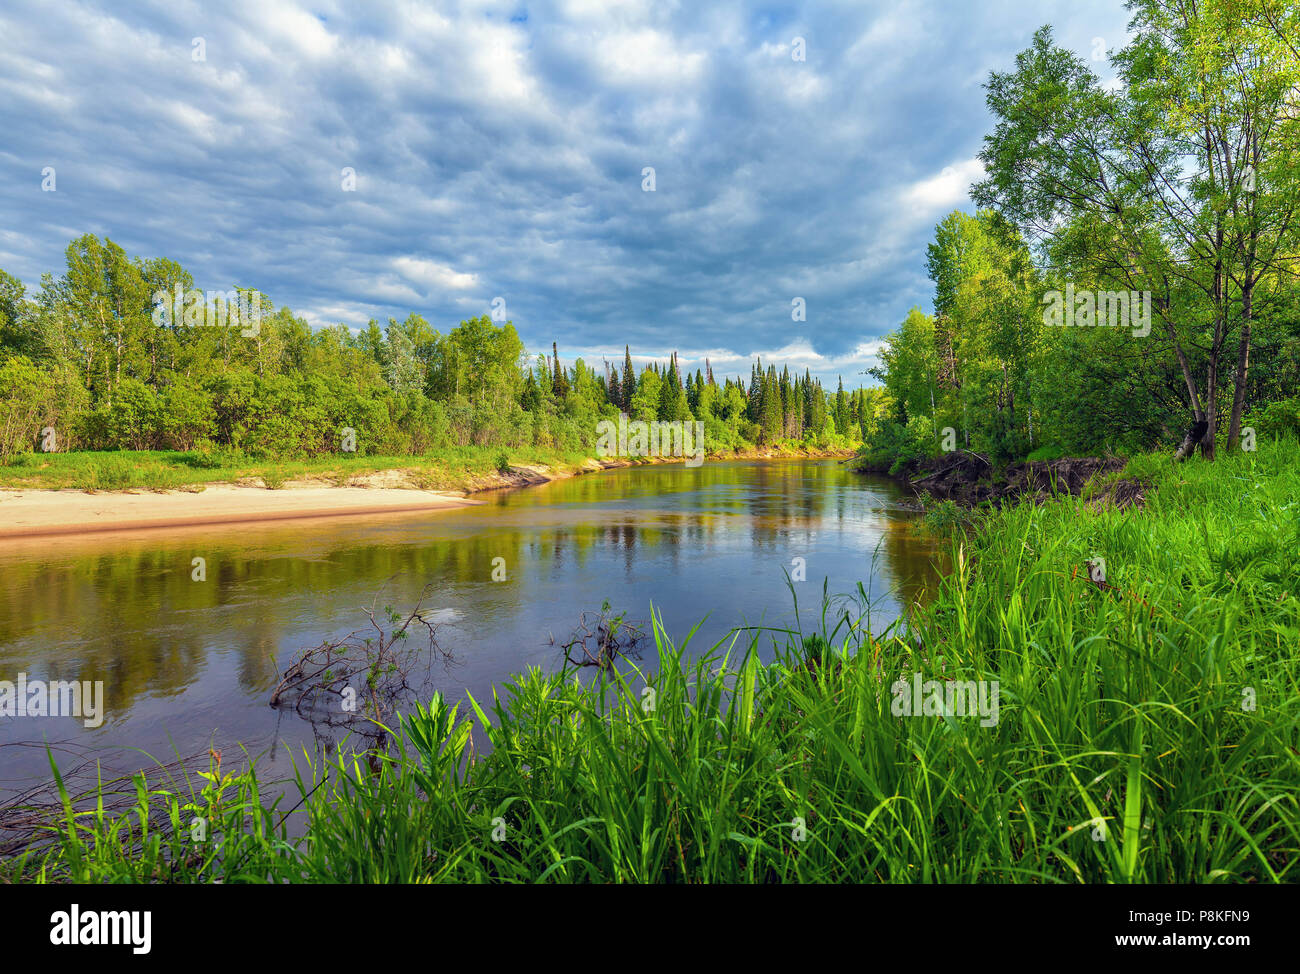 Beau paysage d'été avec la nature sibérienne. Chet rivière dans la région de Tomsk. Banque D'Images